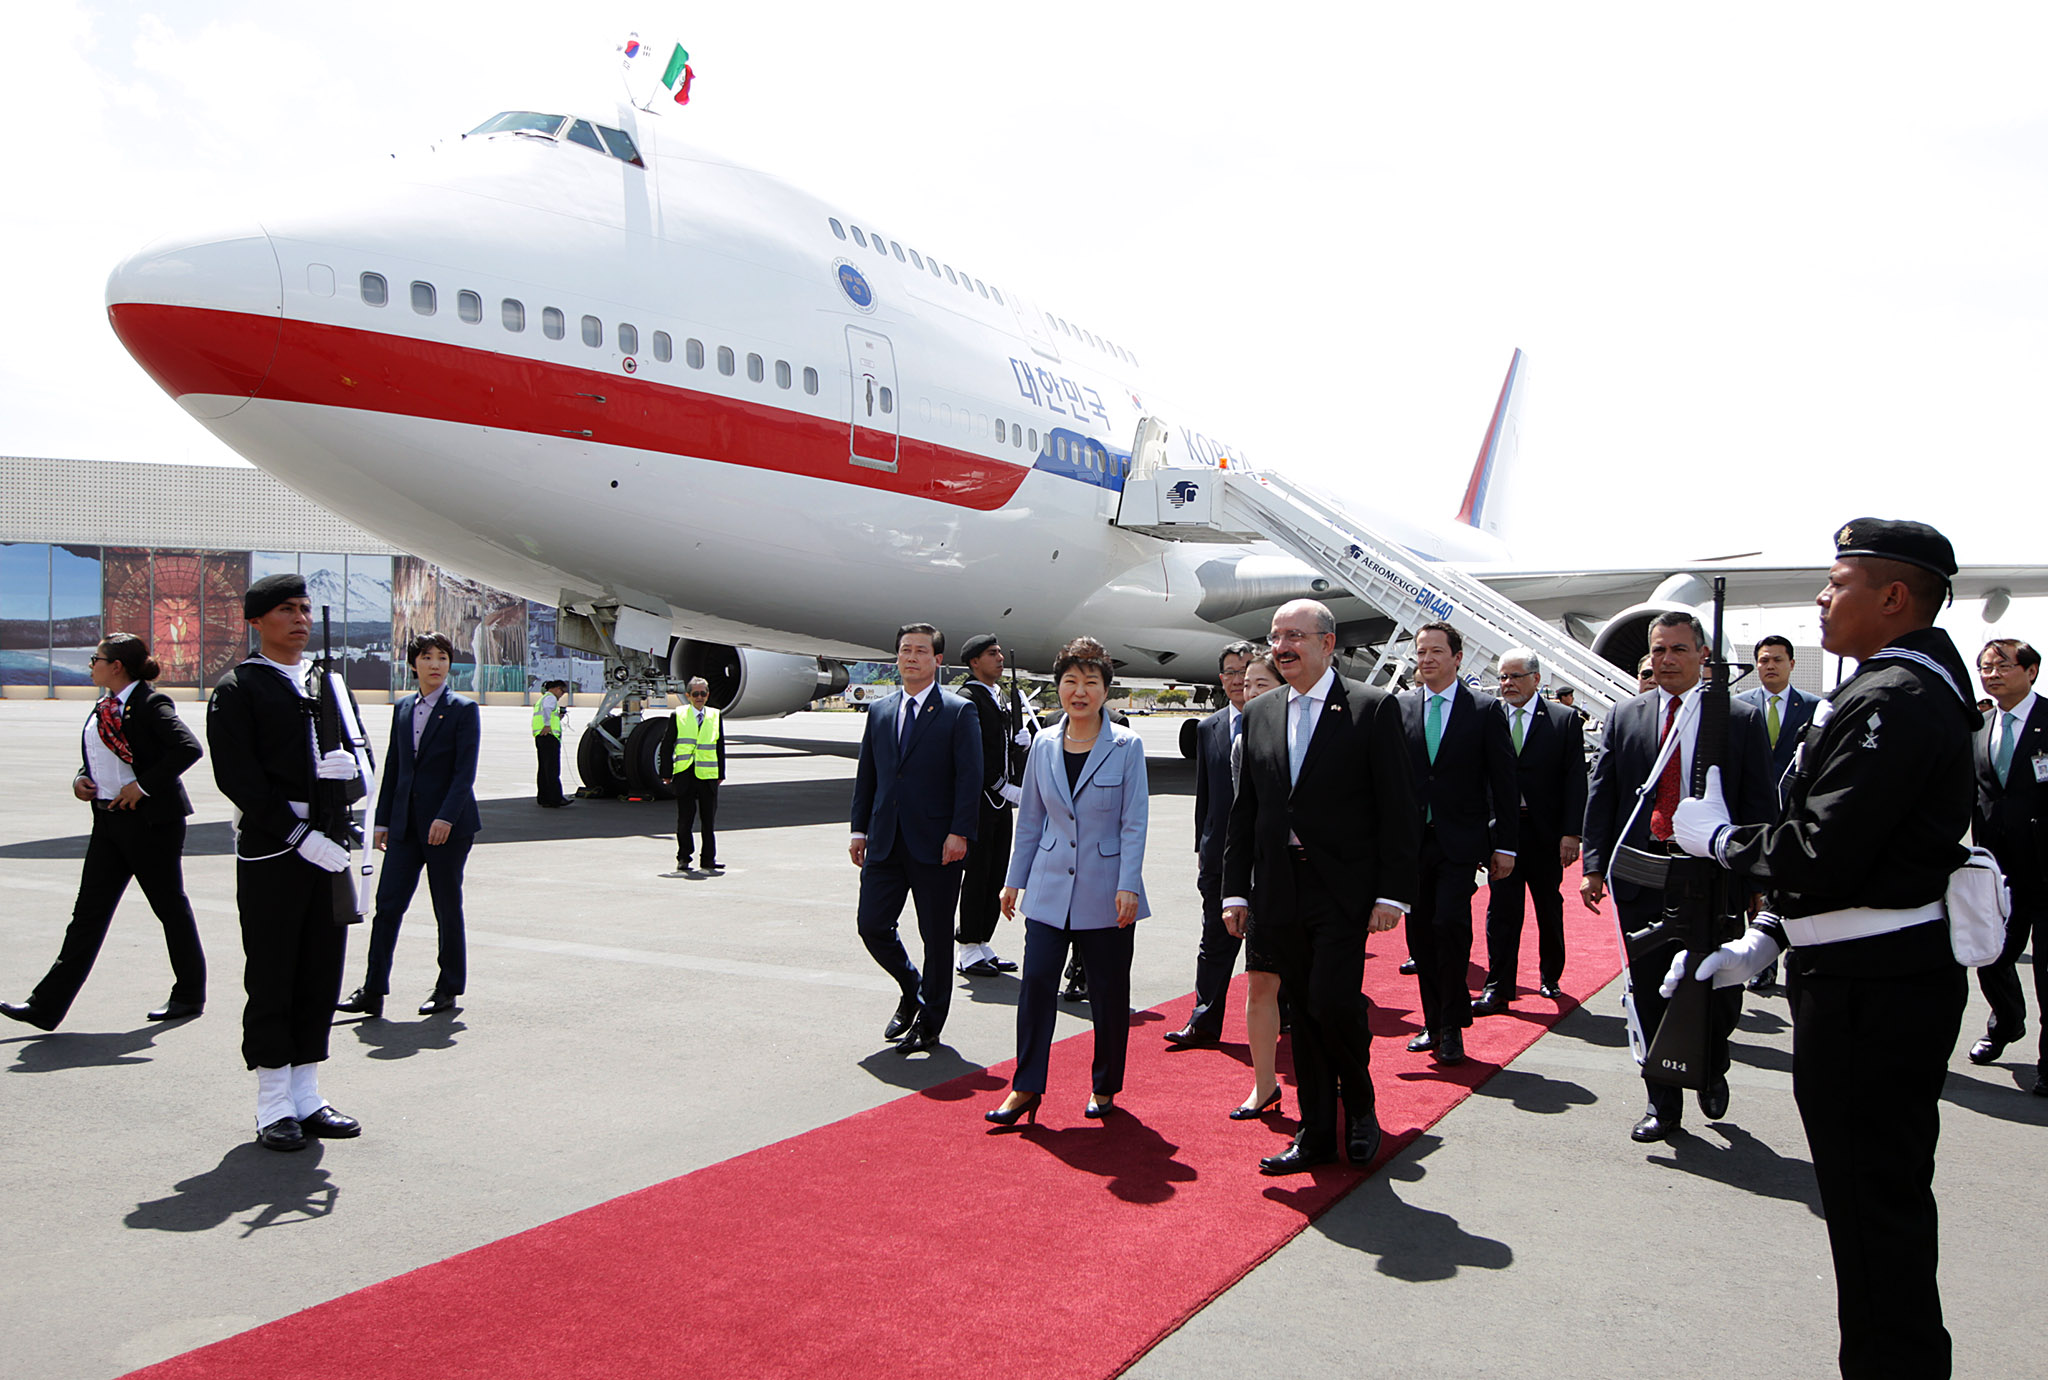 FOTO 3 Arribo de la Presidenta de la Rep blica de Corea  Excma Sra Park Geun hyejpg